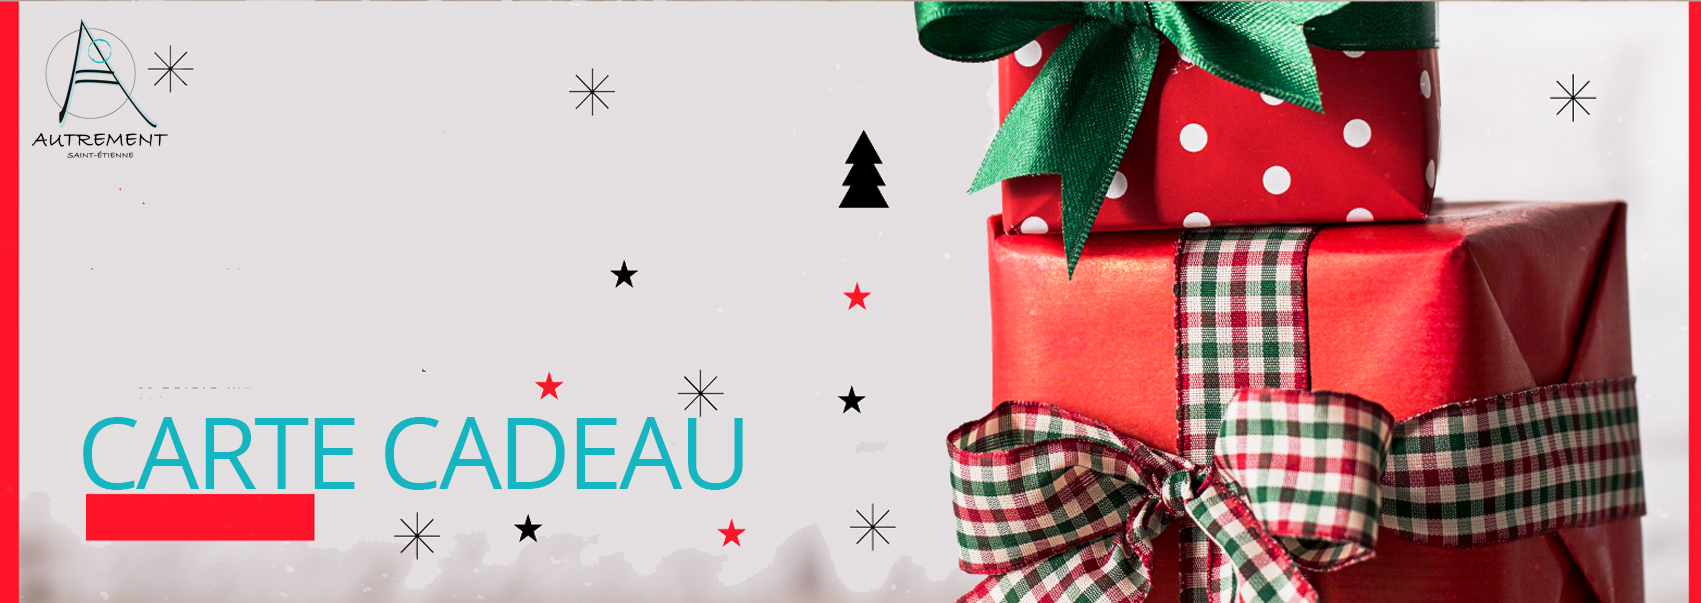 Carte Cadeau ie En Cadeau De Noël Photo éditorial - Image du achat,  étiquette: 160020356